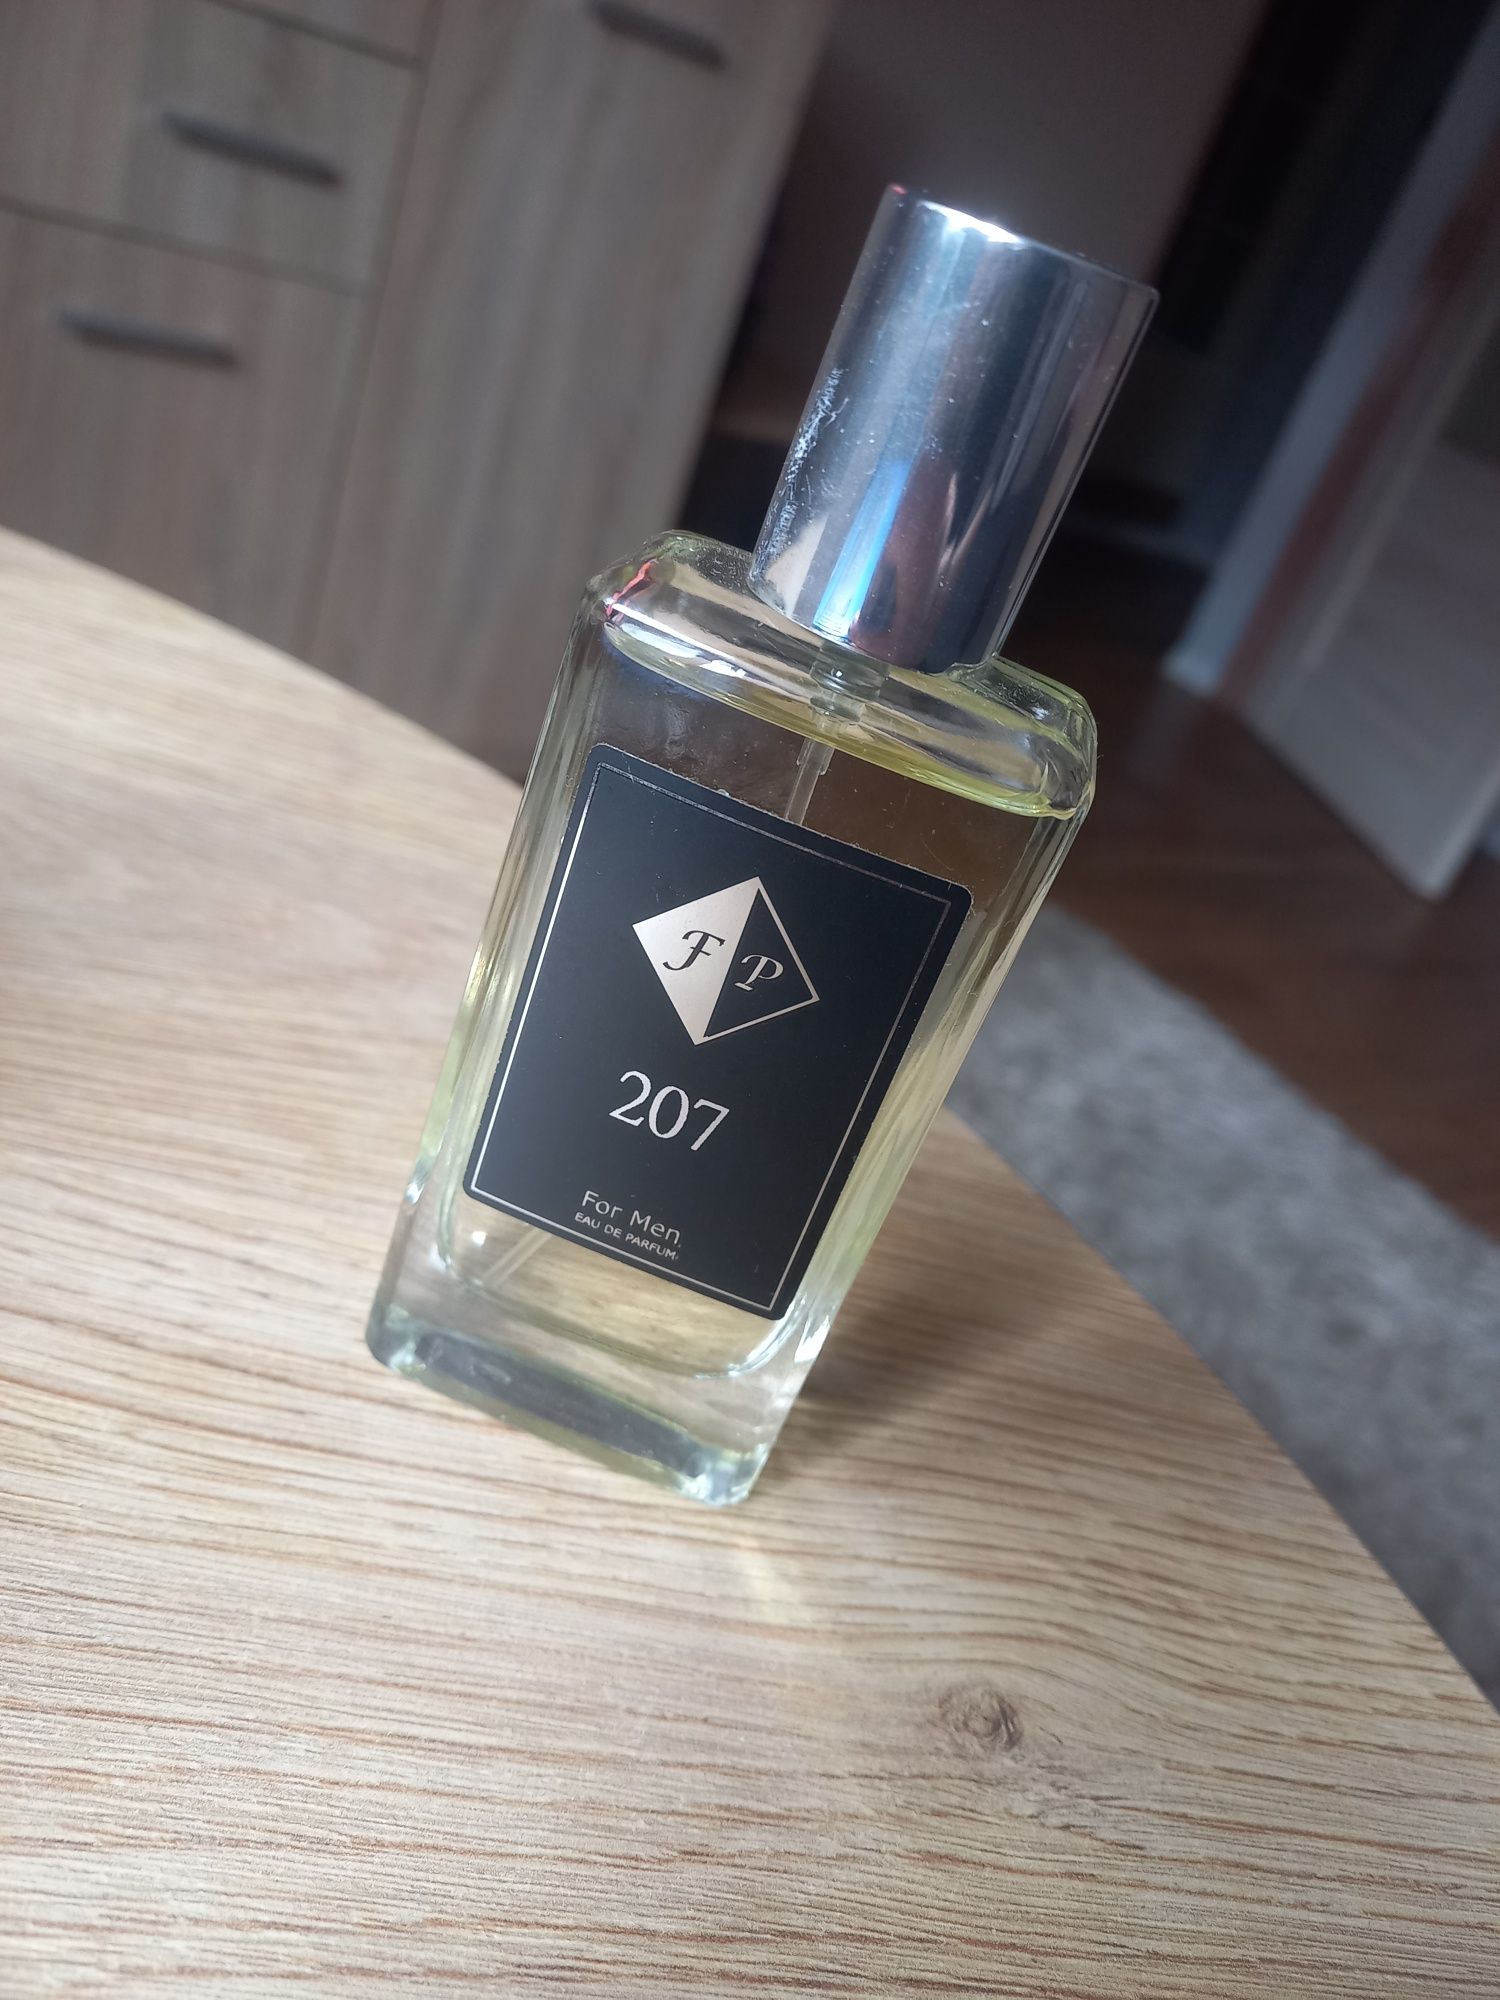 Francuskie perfumy męski zapach 207 35 ml